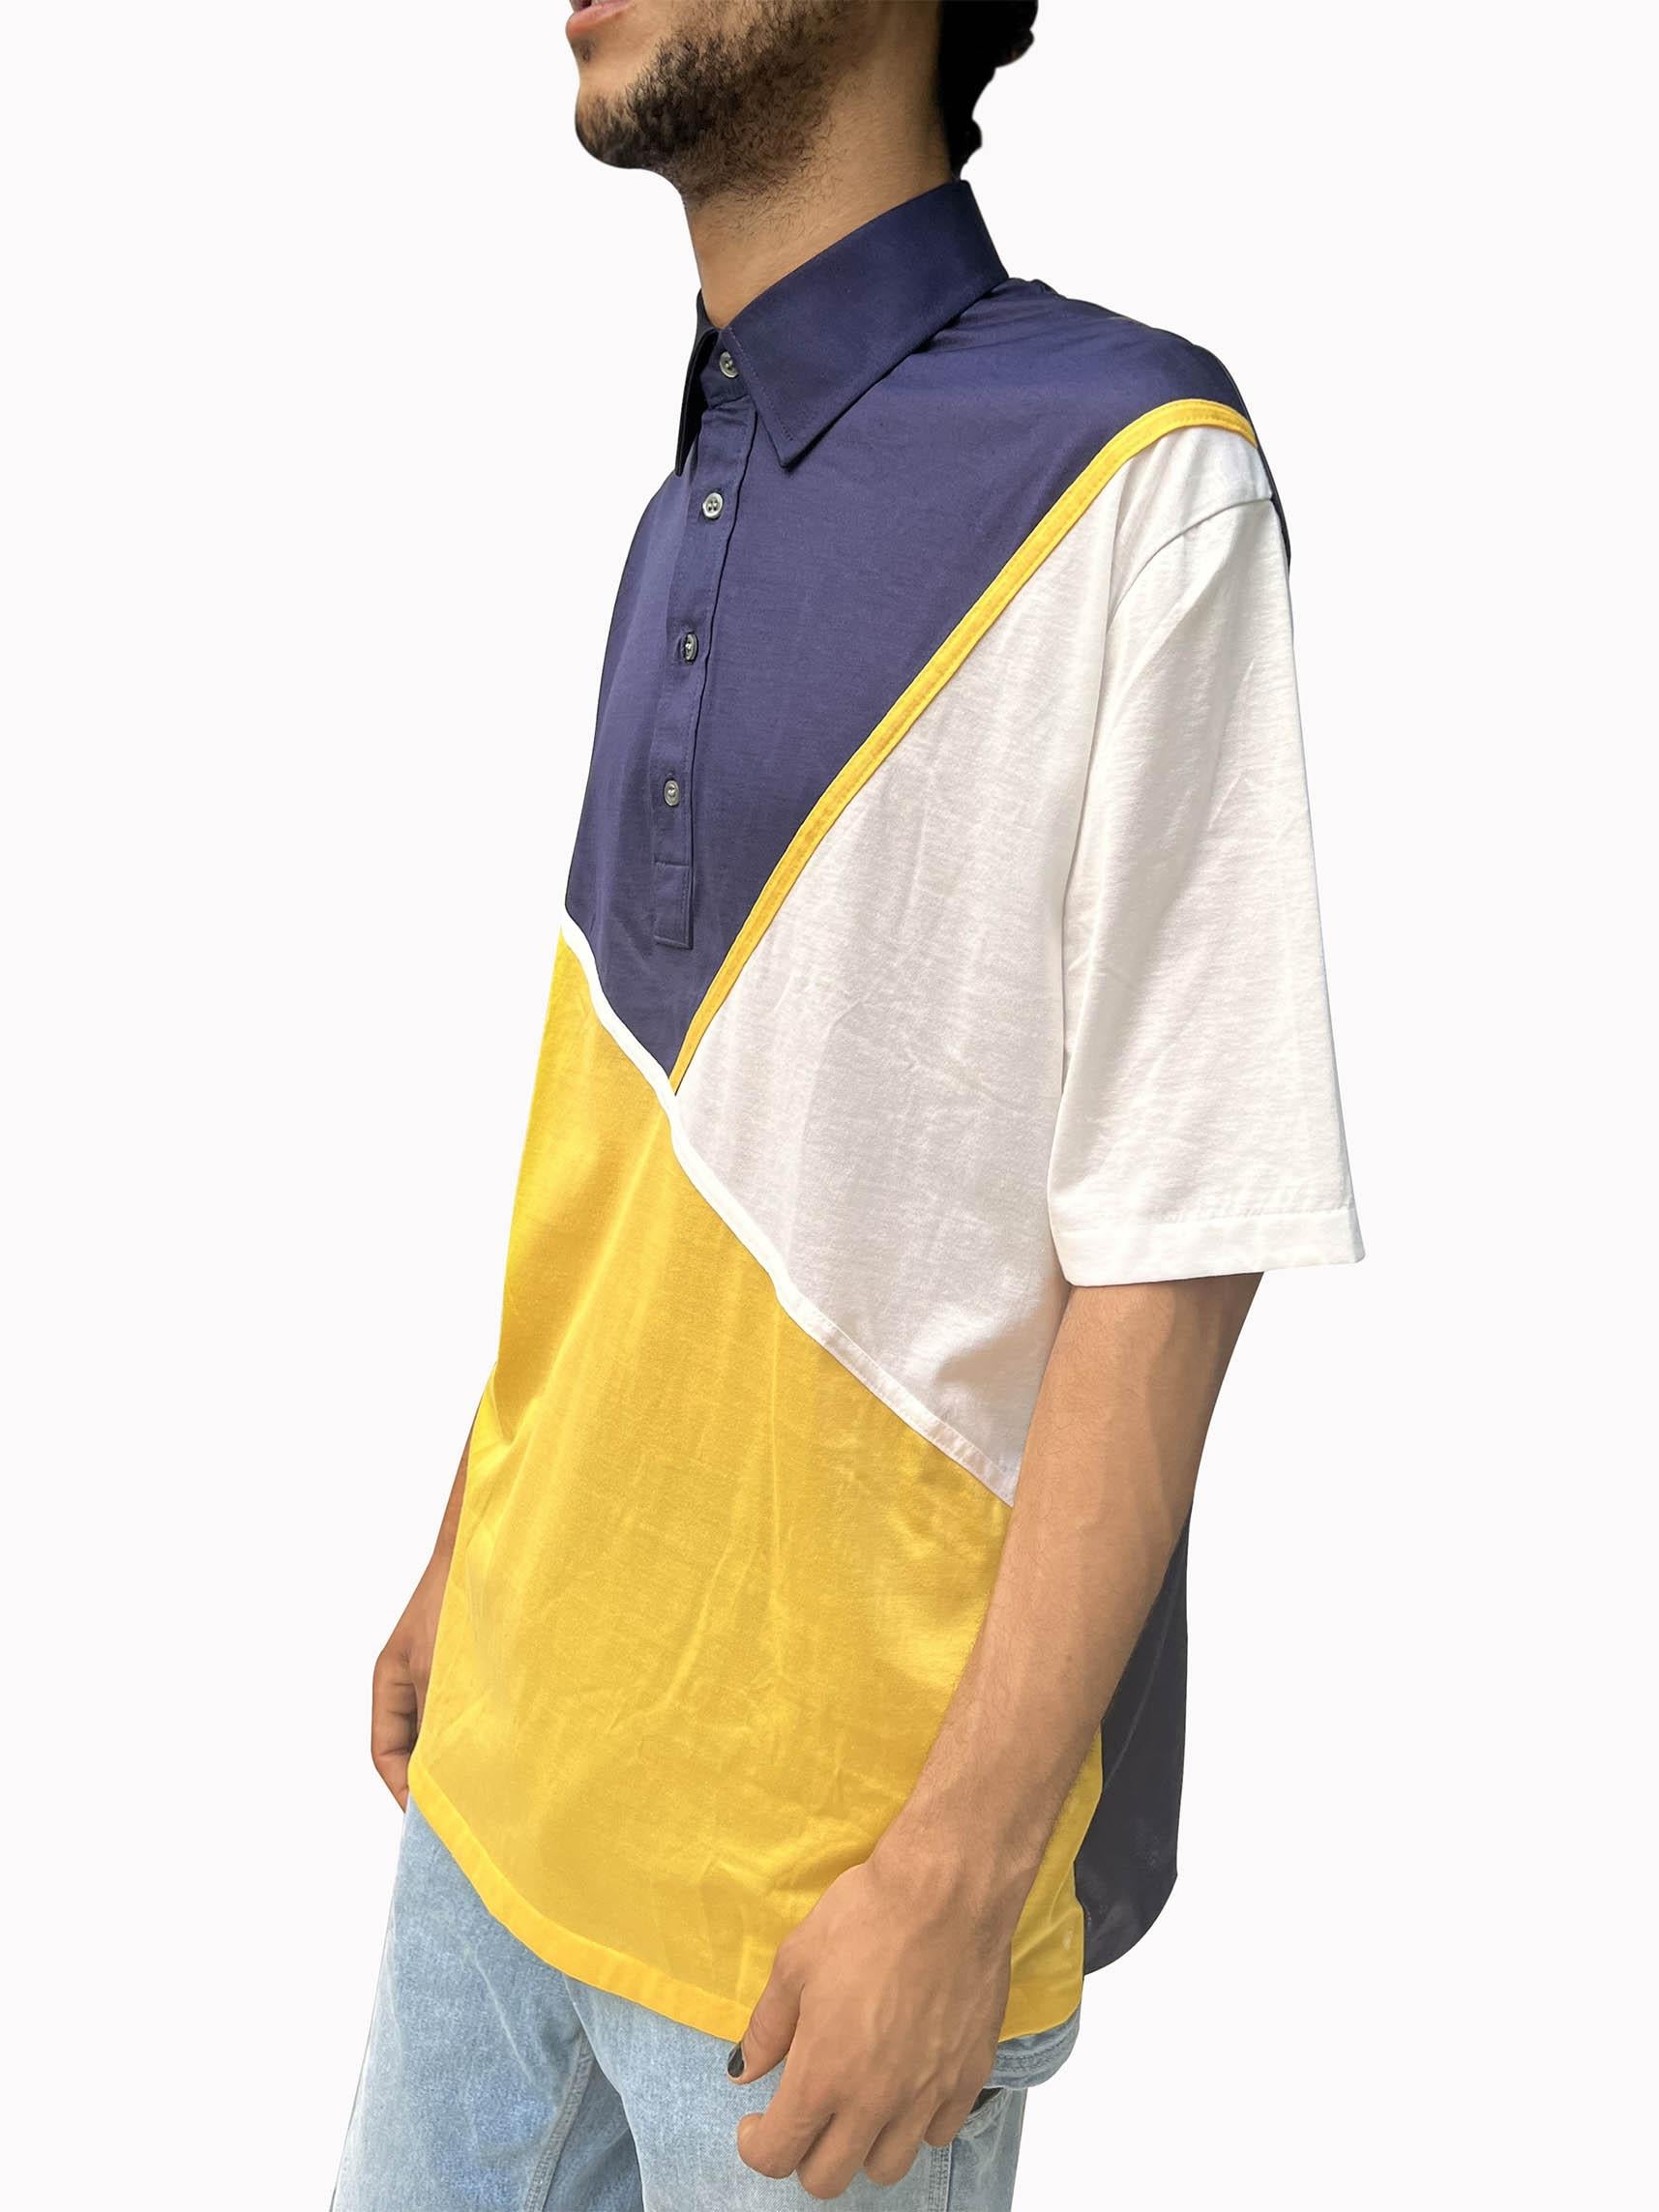 polo shirt 1980s